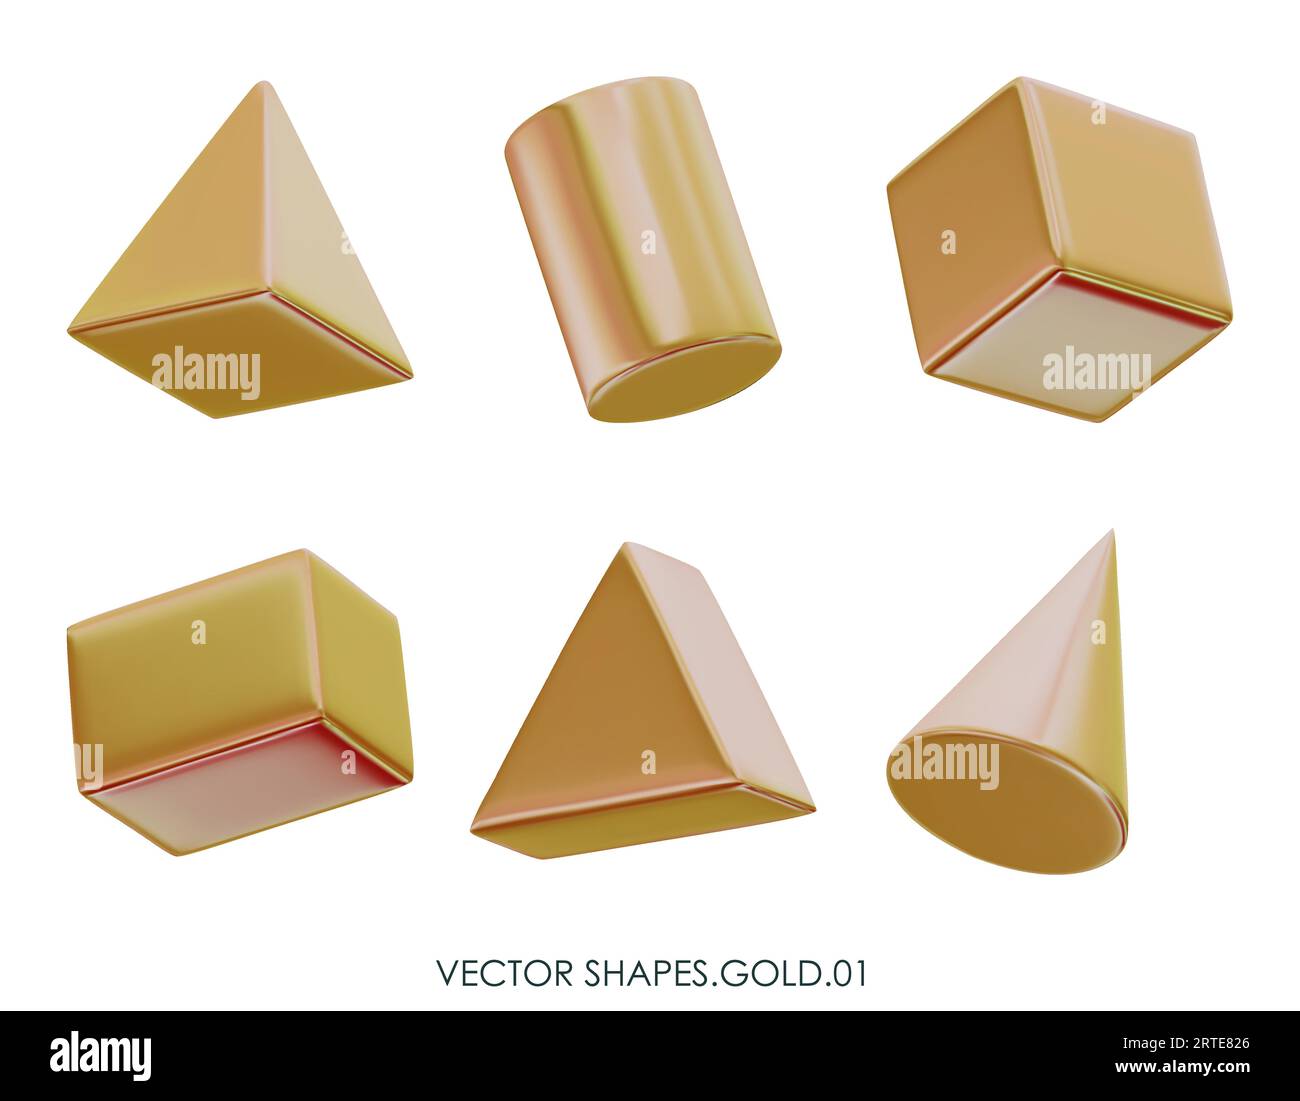 Rendering realistico 3D delle figure d'oro. Oggetti di design metallici gialli. Forme geometriche decorative vettoriali. Cubo, cono, cilindro. Isolato su uno sfondo bianco Illustrazione Vettoriale